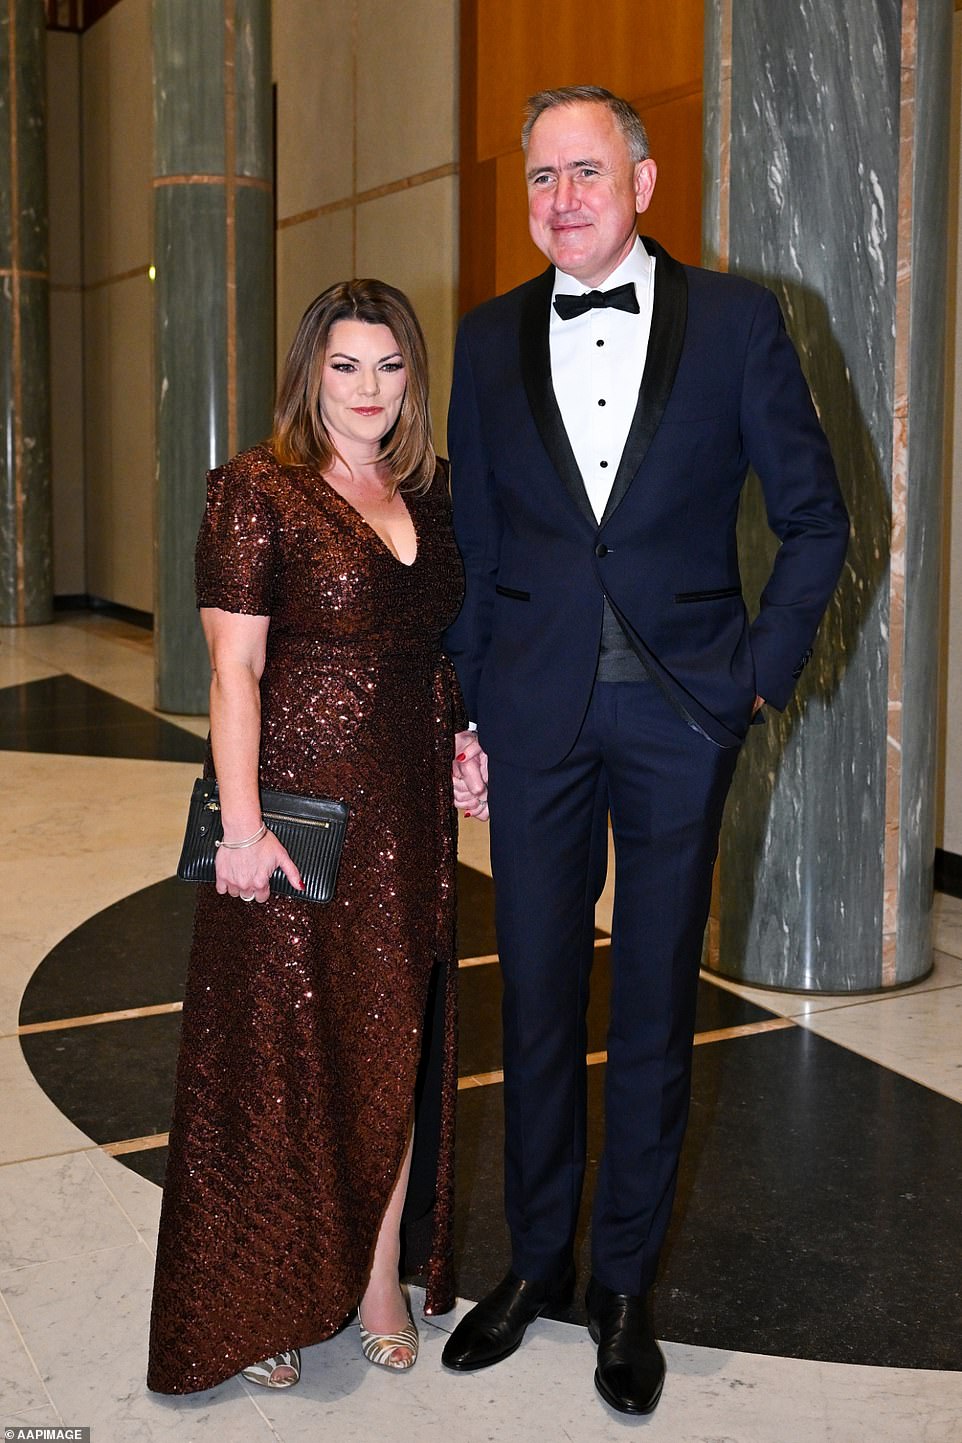 Senatorin Sarah Hanson-Young sorgte in diesem Jahr für Unumstrittenheit in einem schimmernden braun-goldenen Kleid an der Seite ihres Mannes Ben Oquist, der einen dunkelblauen Anzug und eine schwarze Fliege trug